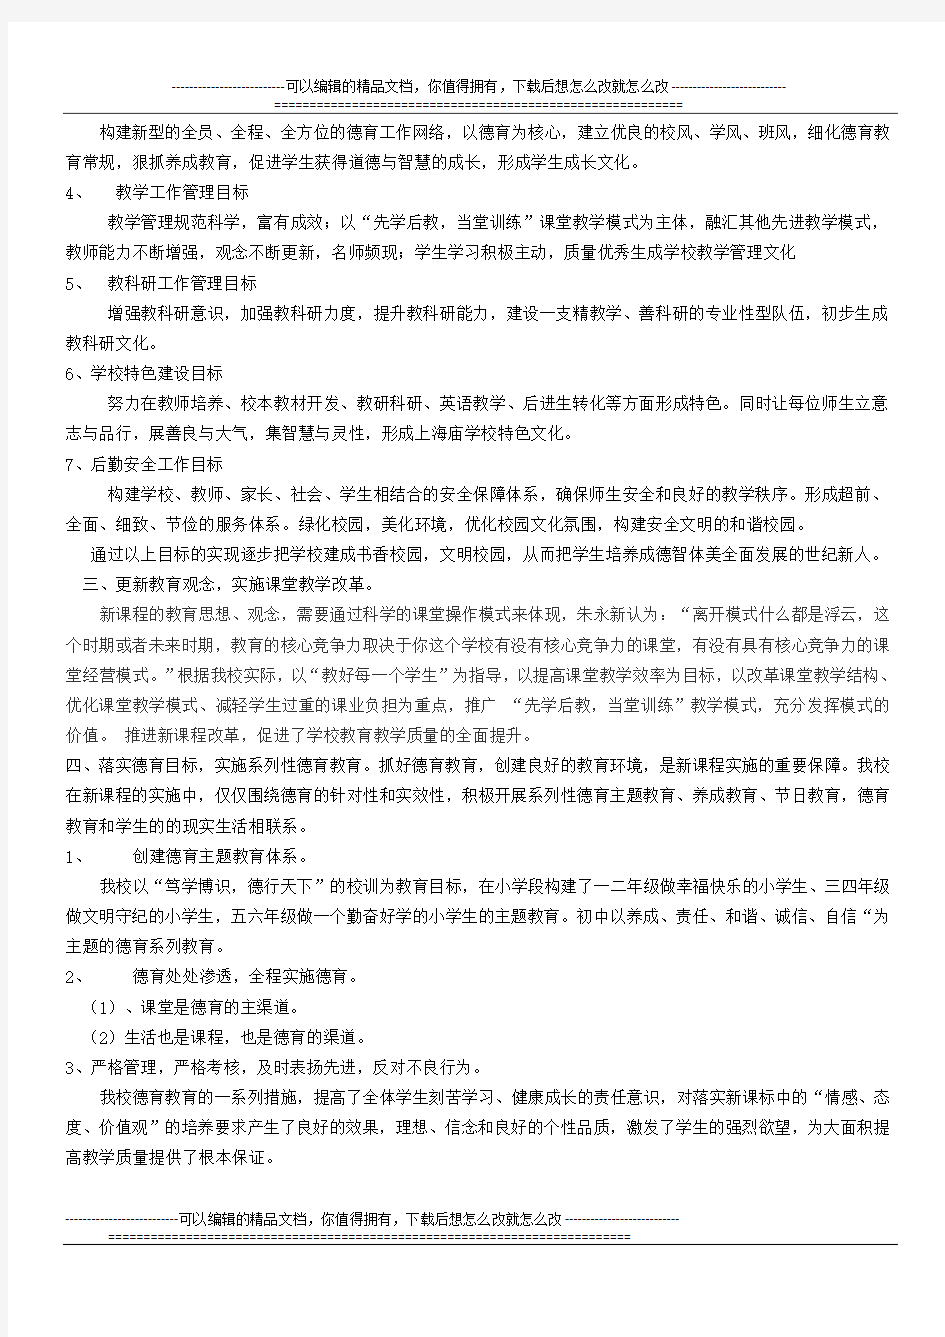 上海庙学校刘选涛13年工作述职报告